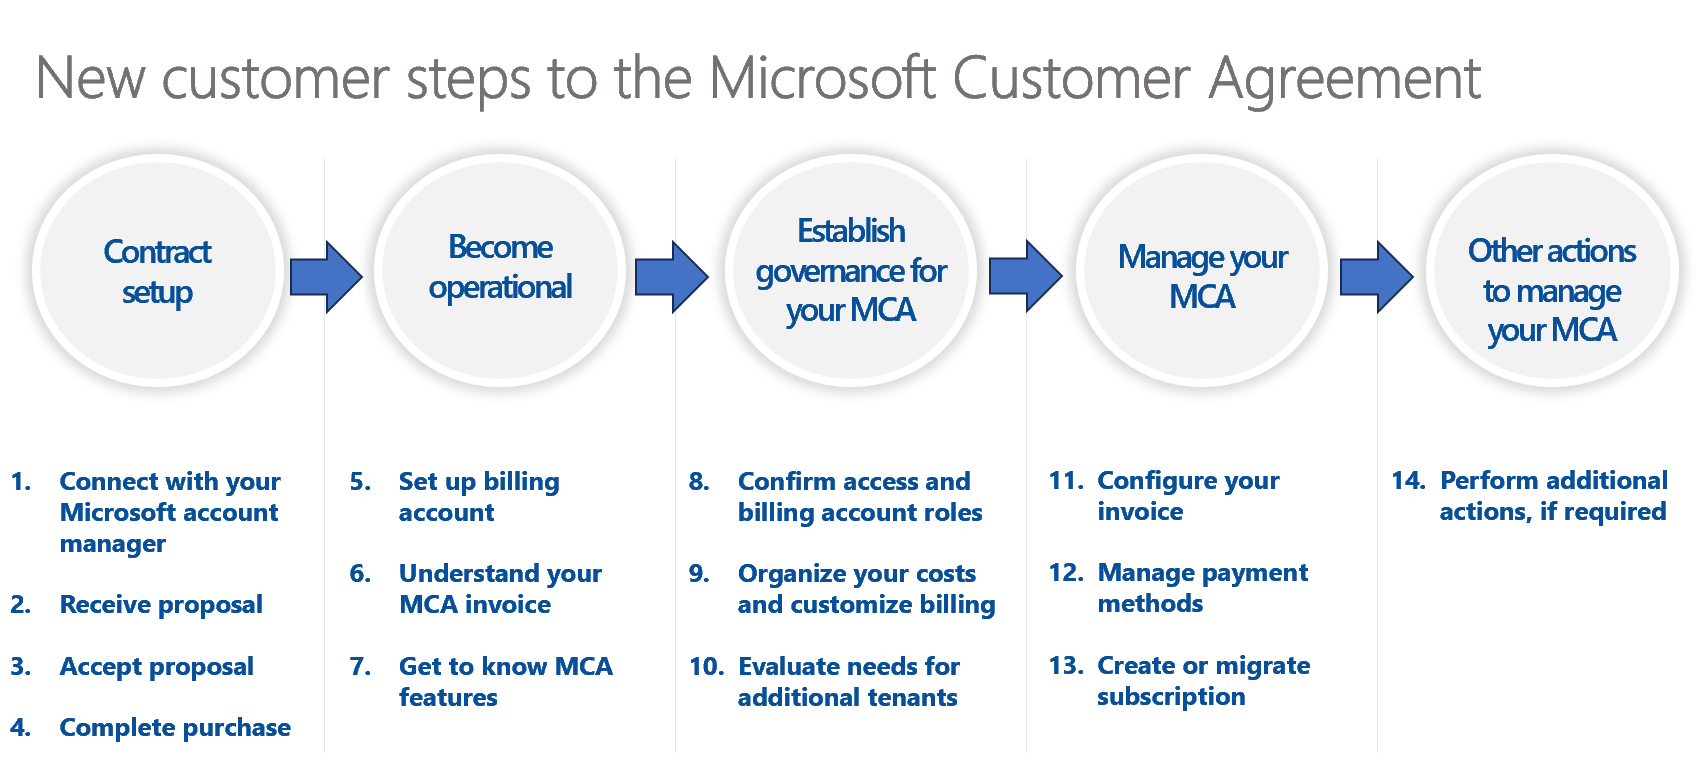 Diagrama mostrando as etapas de integração ao MCA para novos consumidores.